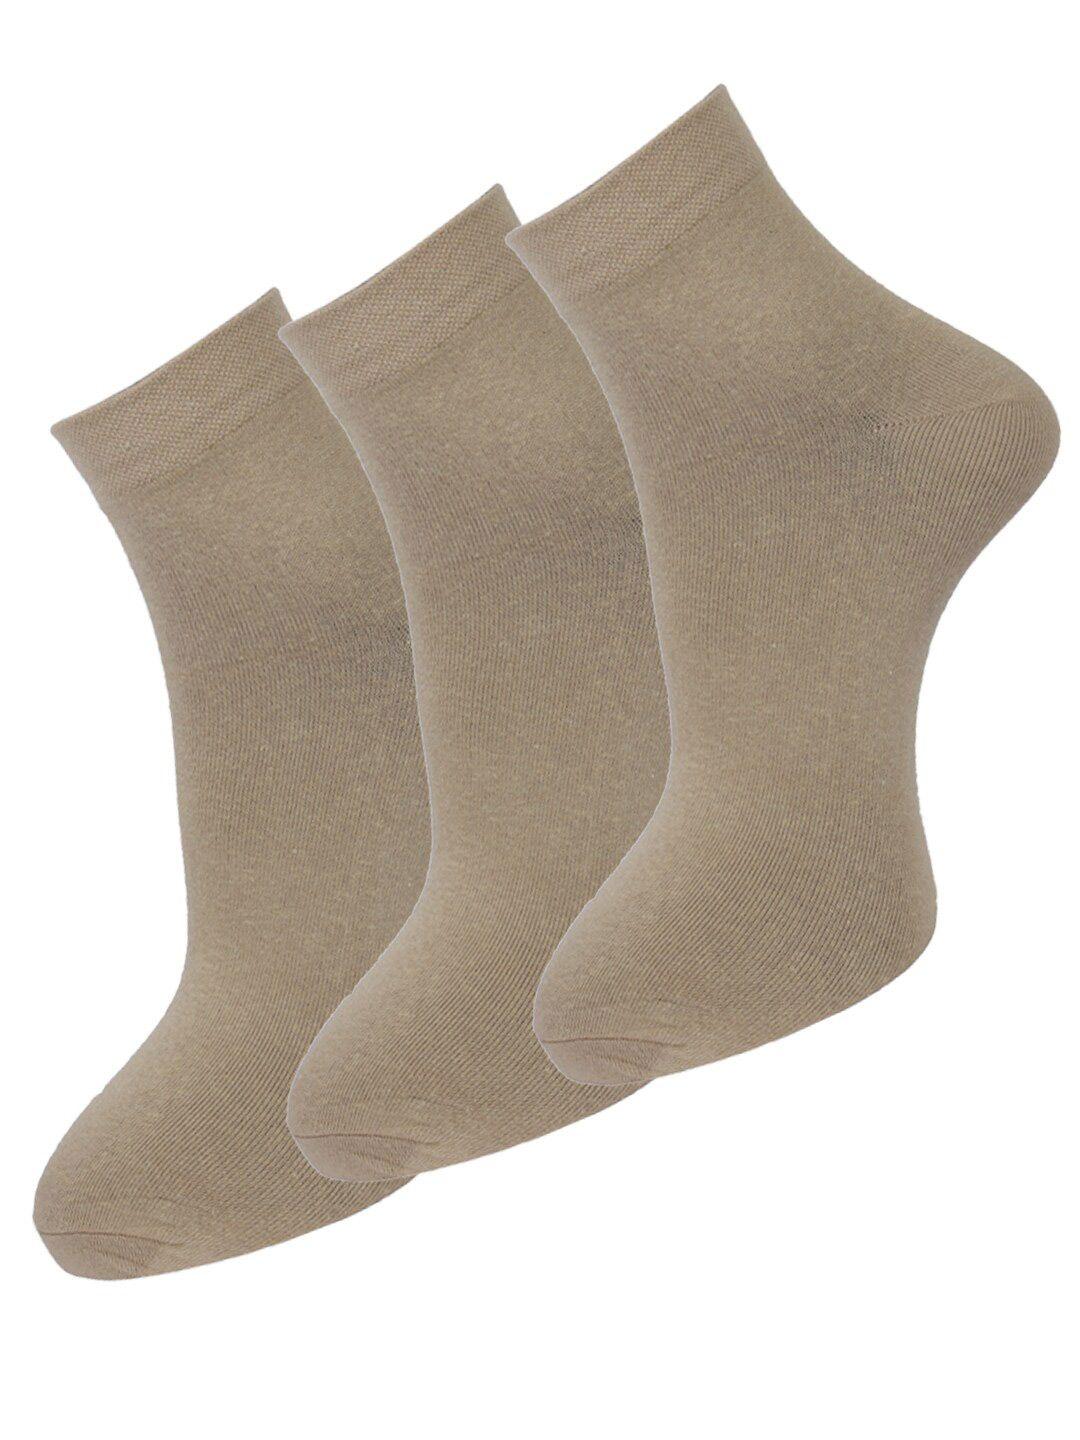 dollar socks men pack of 3 khaki above-ankle length socks